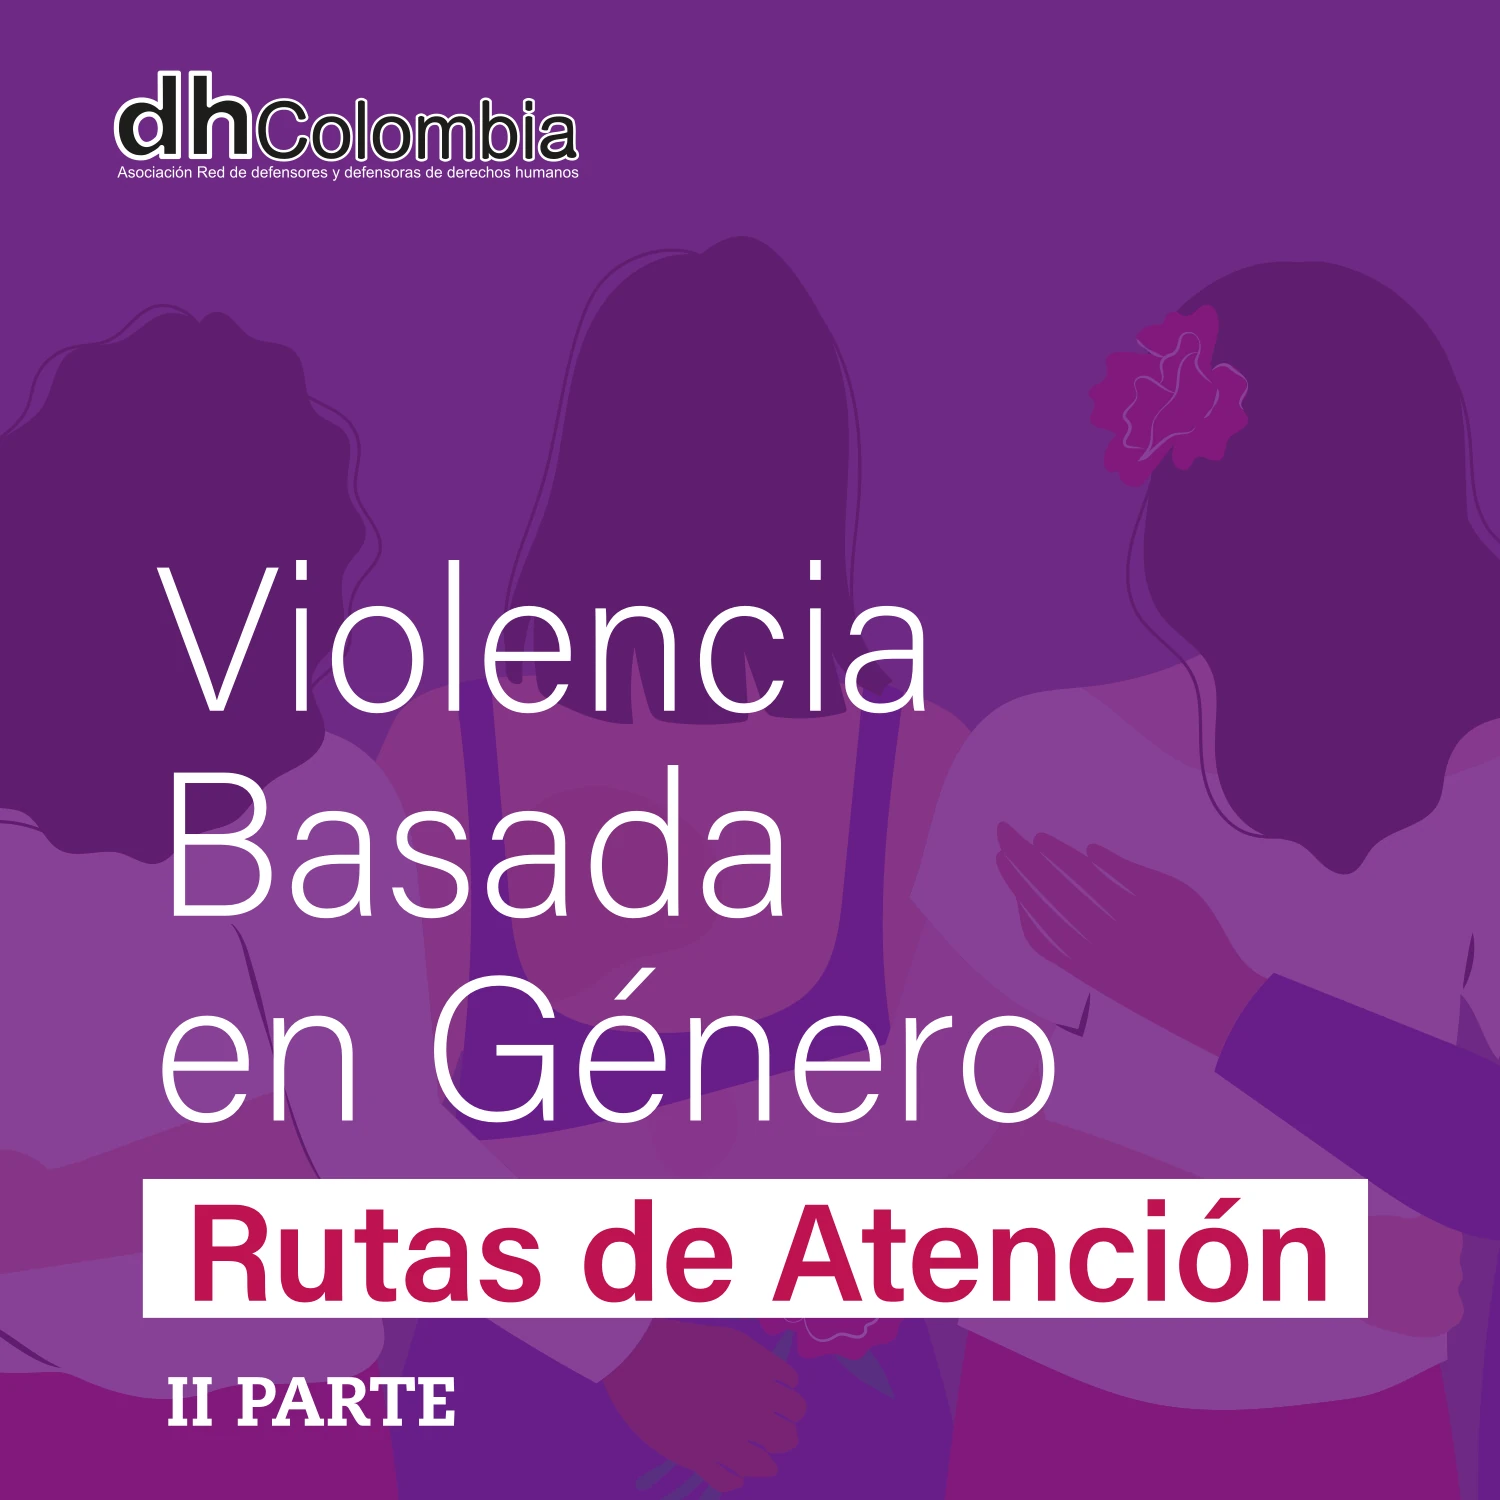 dhColombia Violencia basada en género 5B 01 violencias basadas en genero